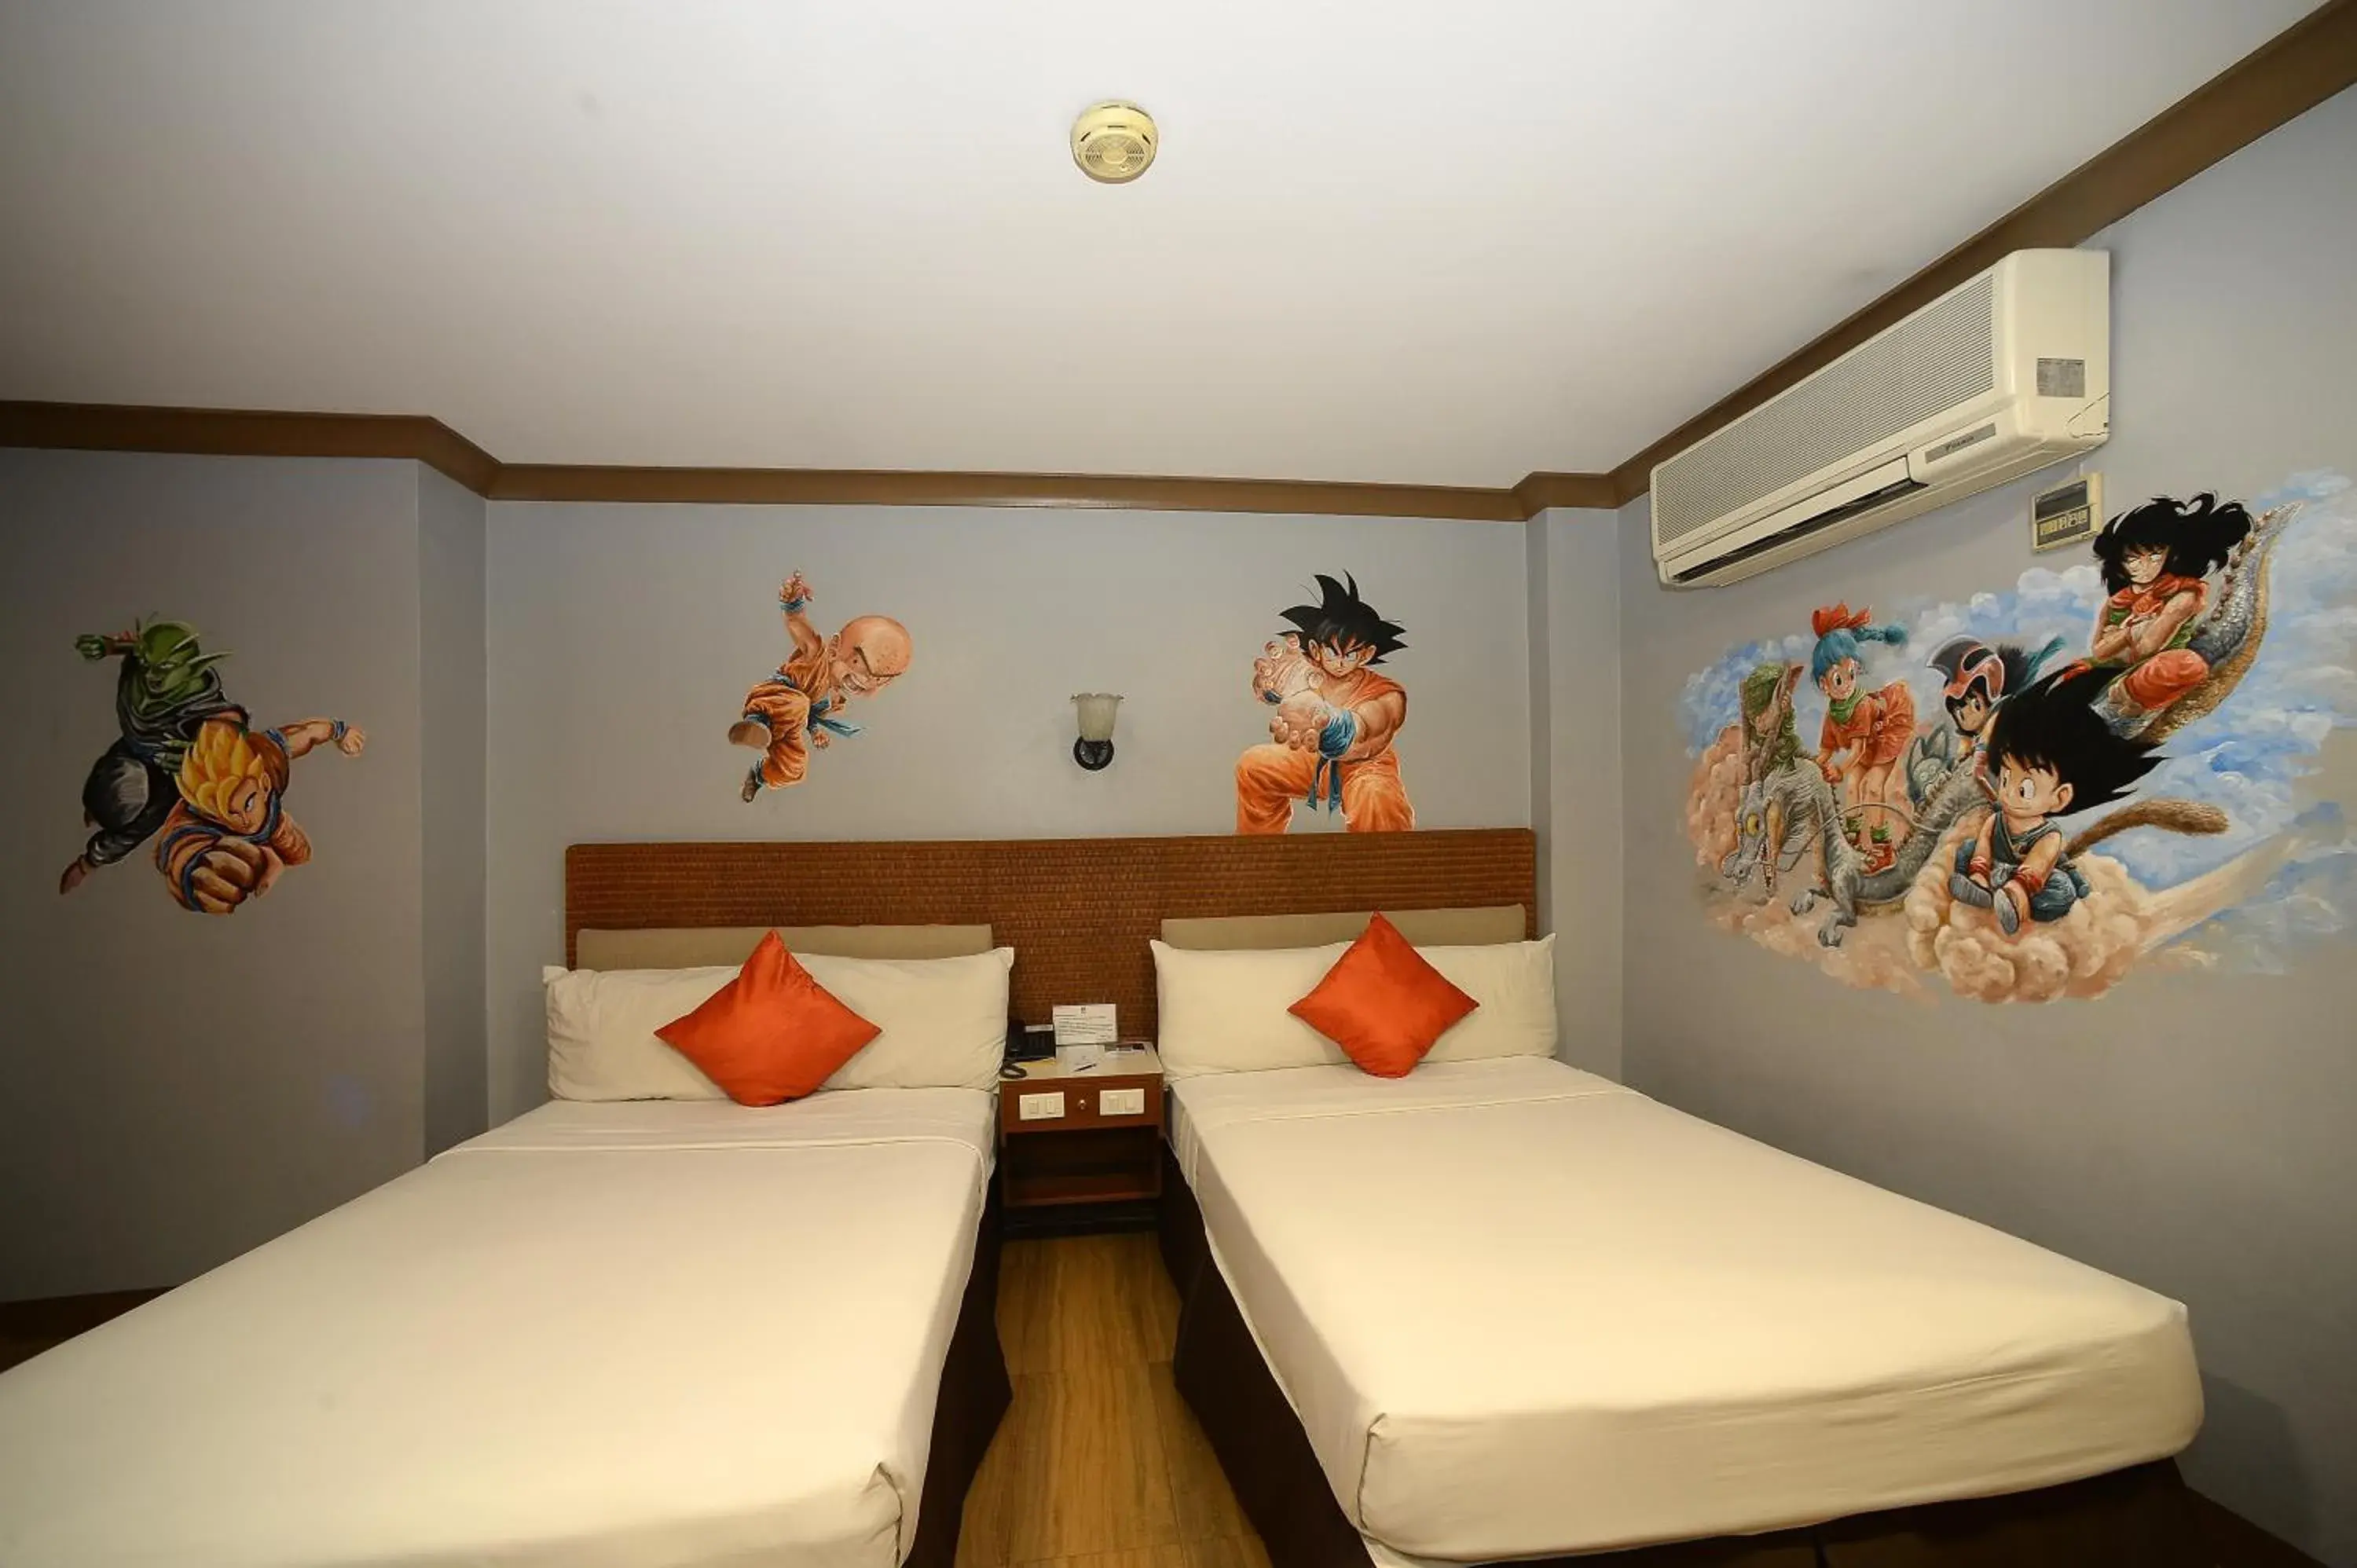 Bed in Golden Pine Hotel